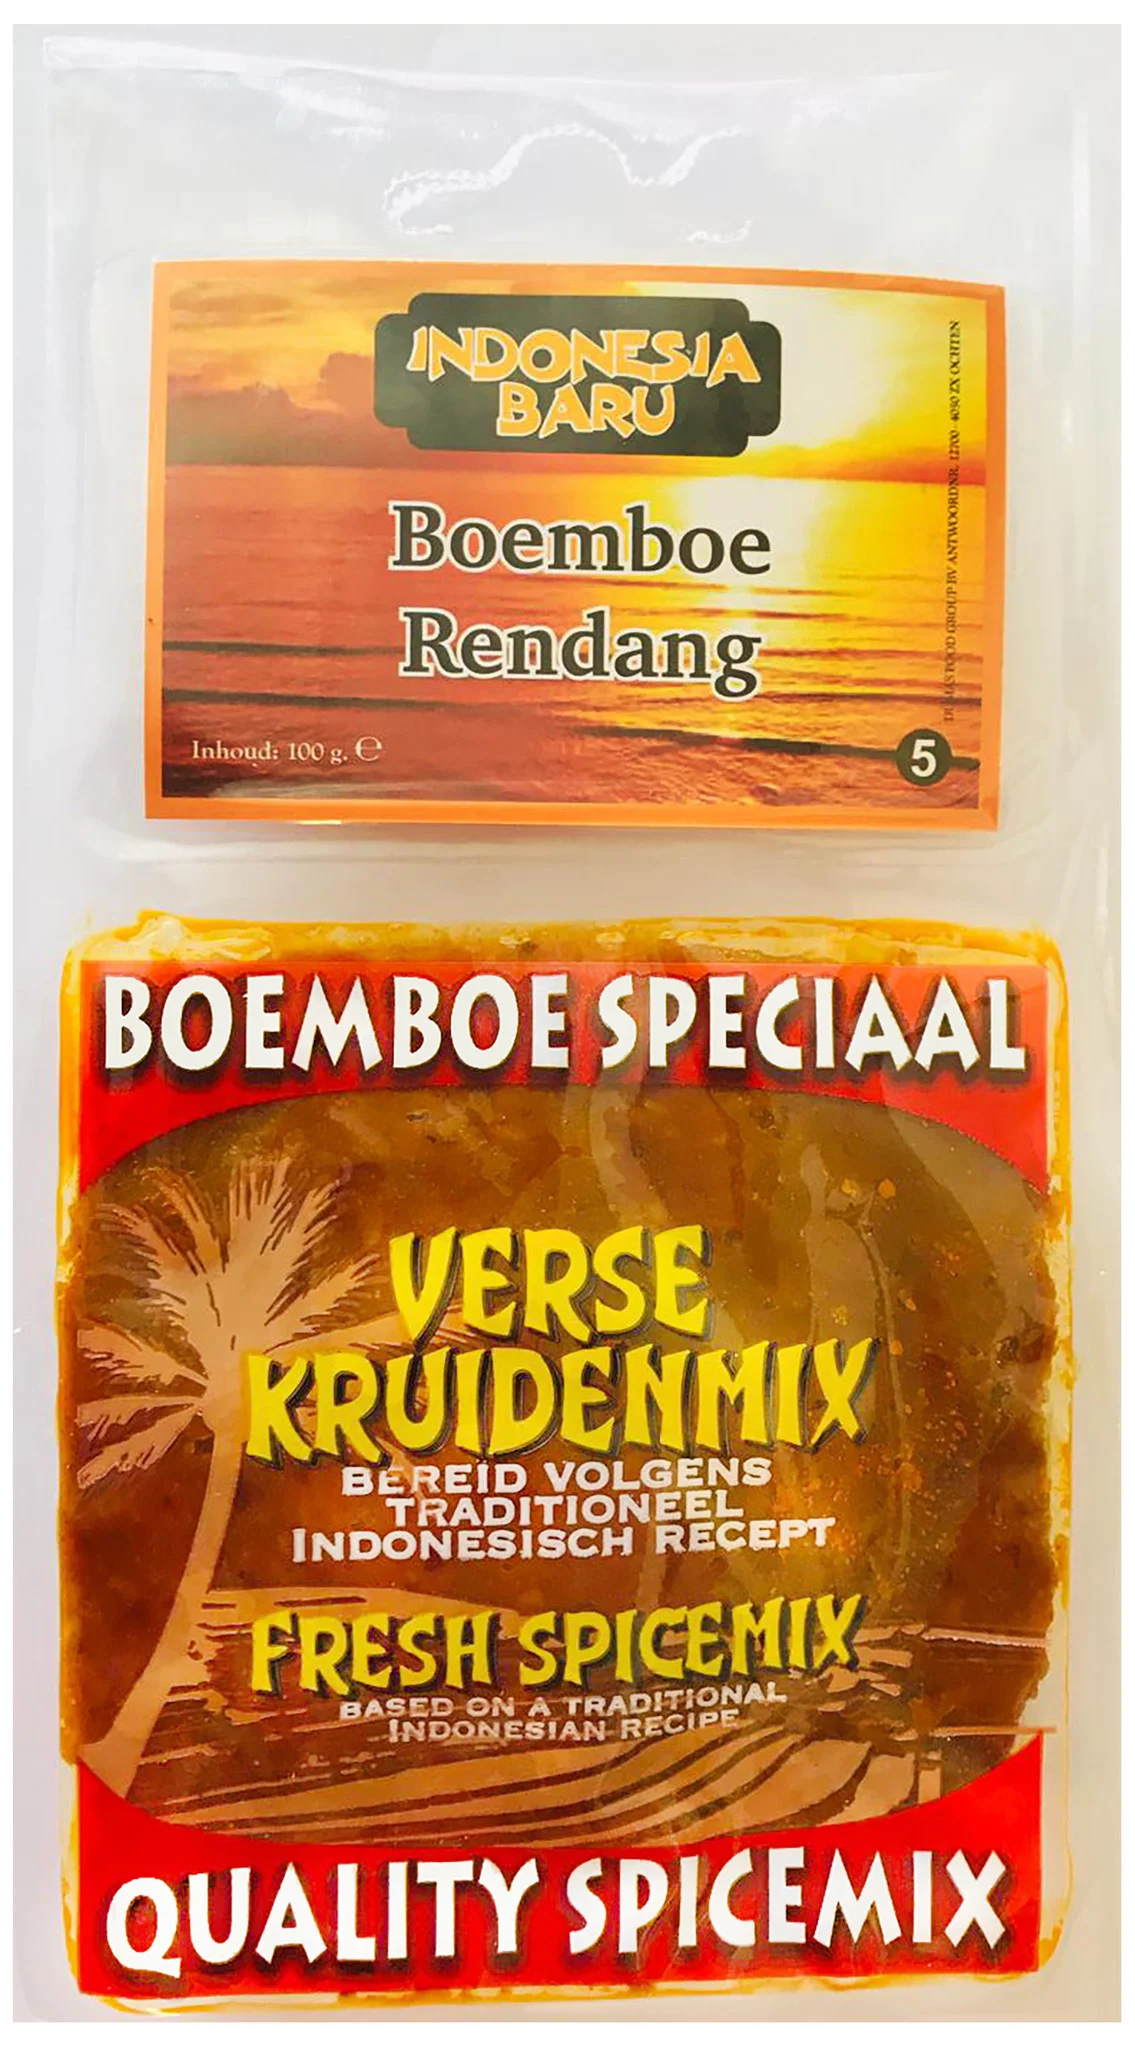 Boemboe Rendang